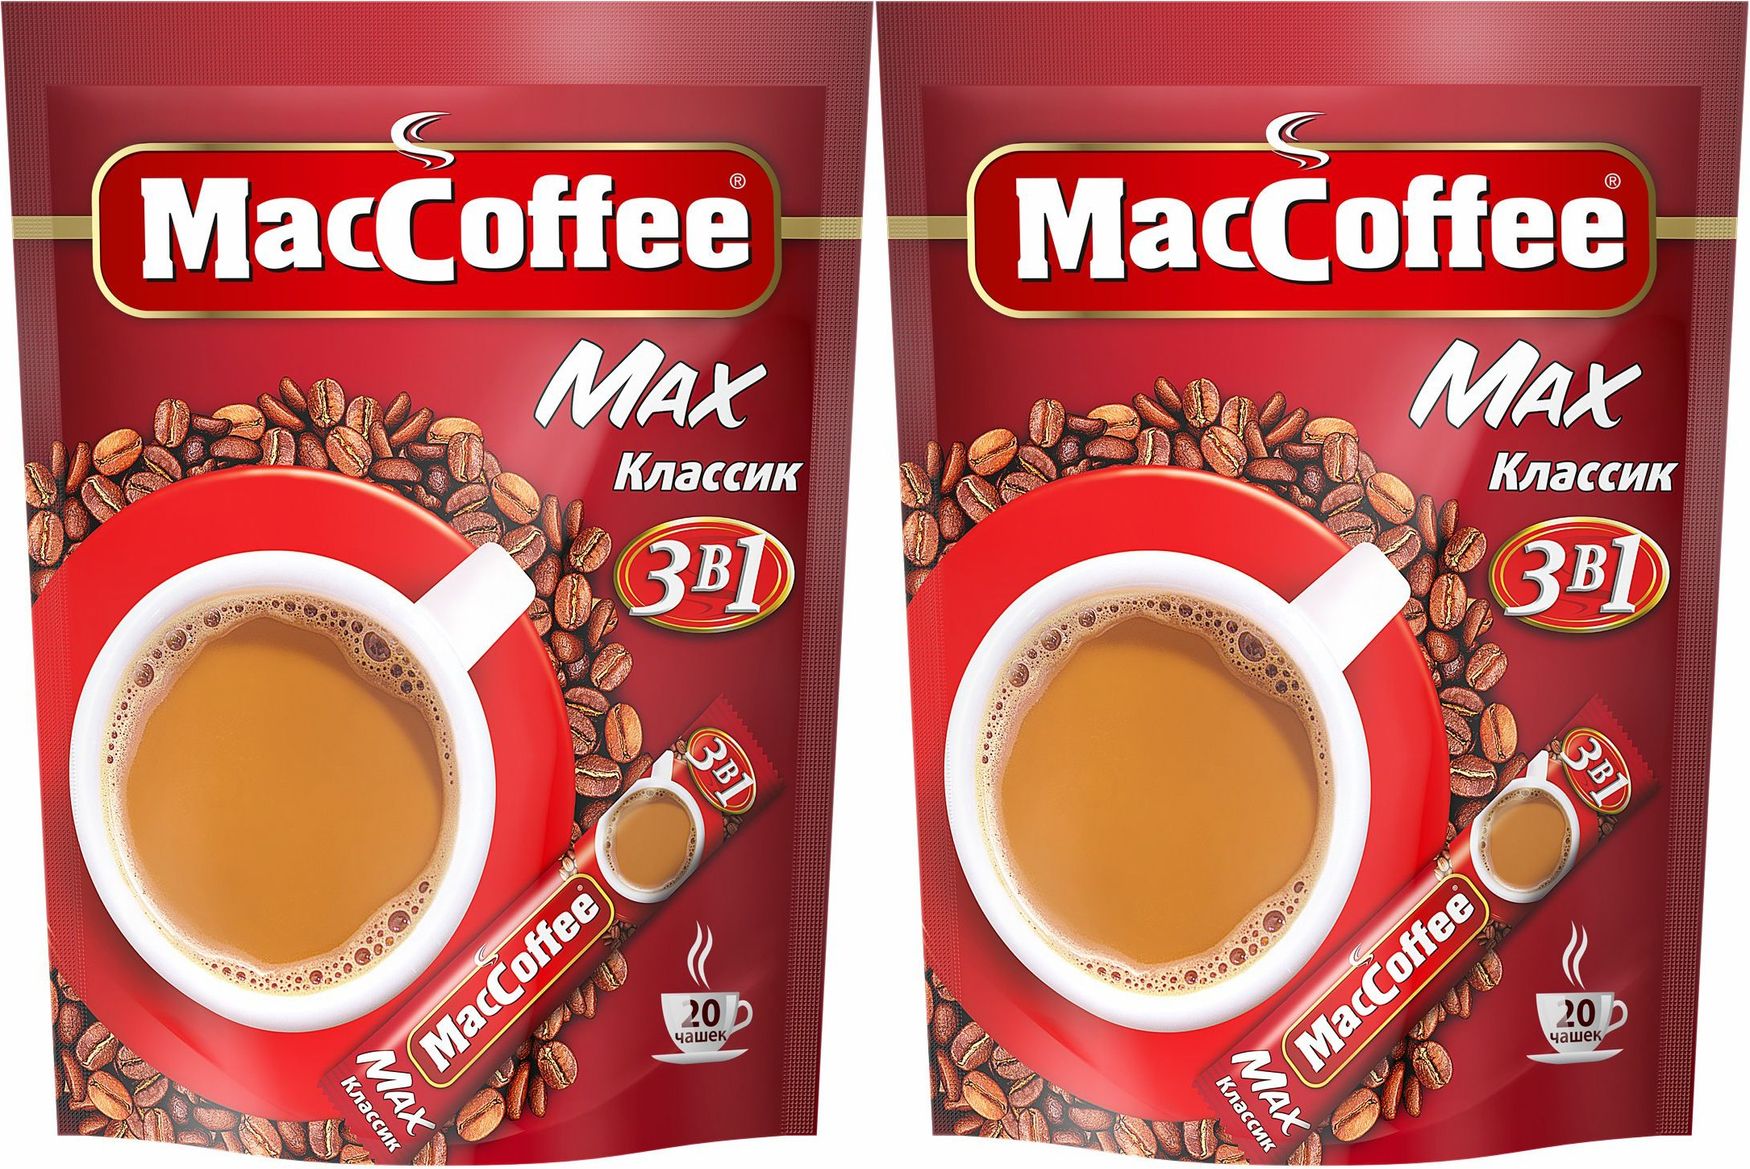 Маккофе отзывы. MACCOFFEE Max-Классик (3в1) кофейный напиток 16г*20*10. Кофе "MACCOFFEE" 3 В 1 (Классик) 16 г (20 шт). Маккофе 3 в 1 отзывы. Маккофе реклама.